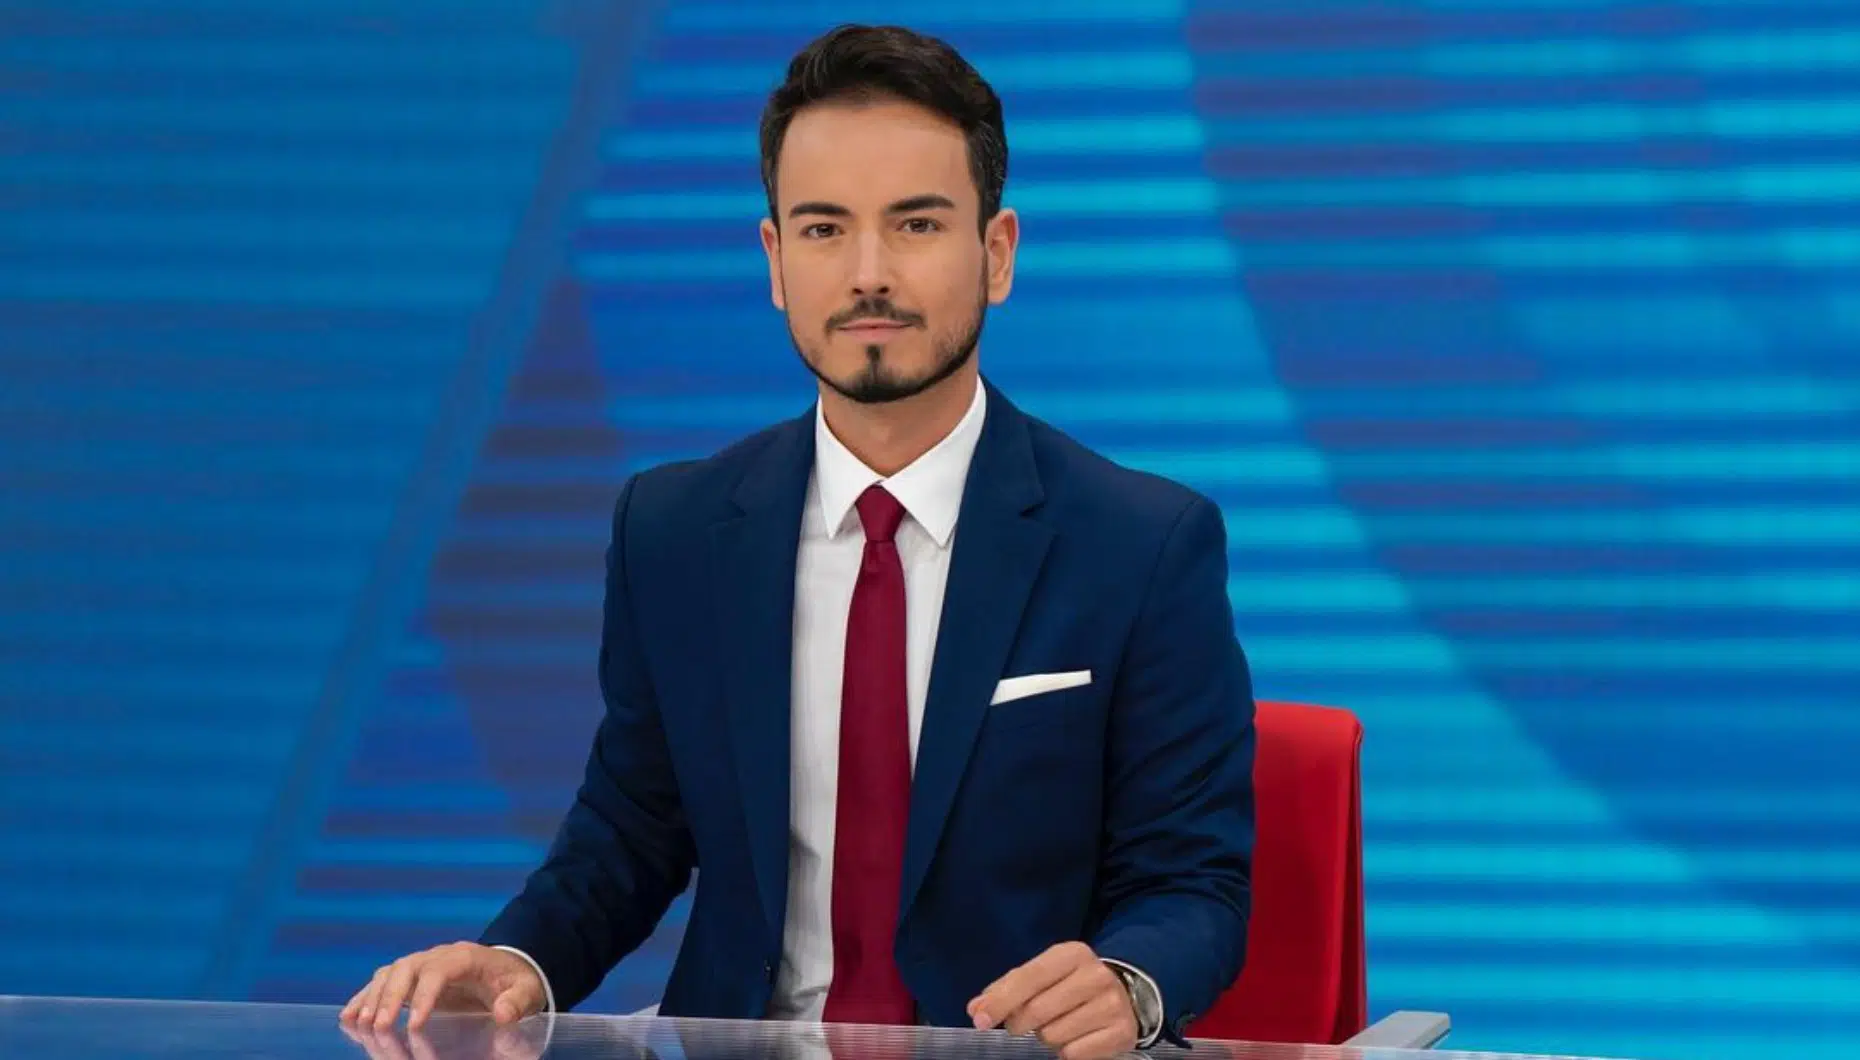 André Carvalho Ramos, Jornalista